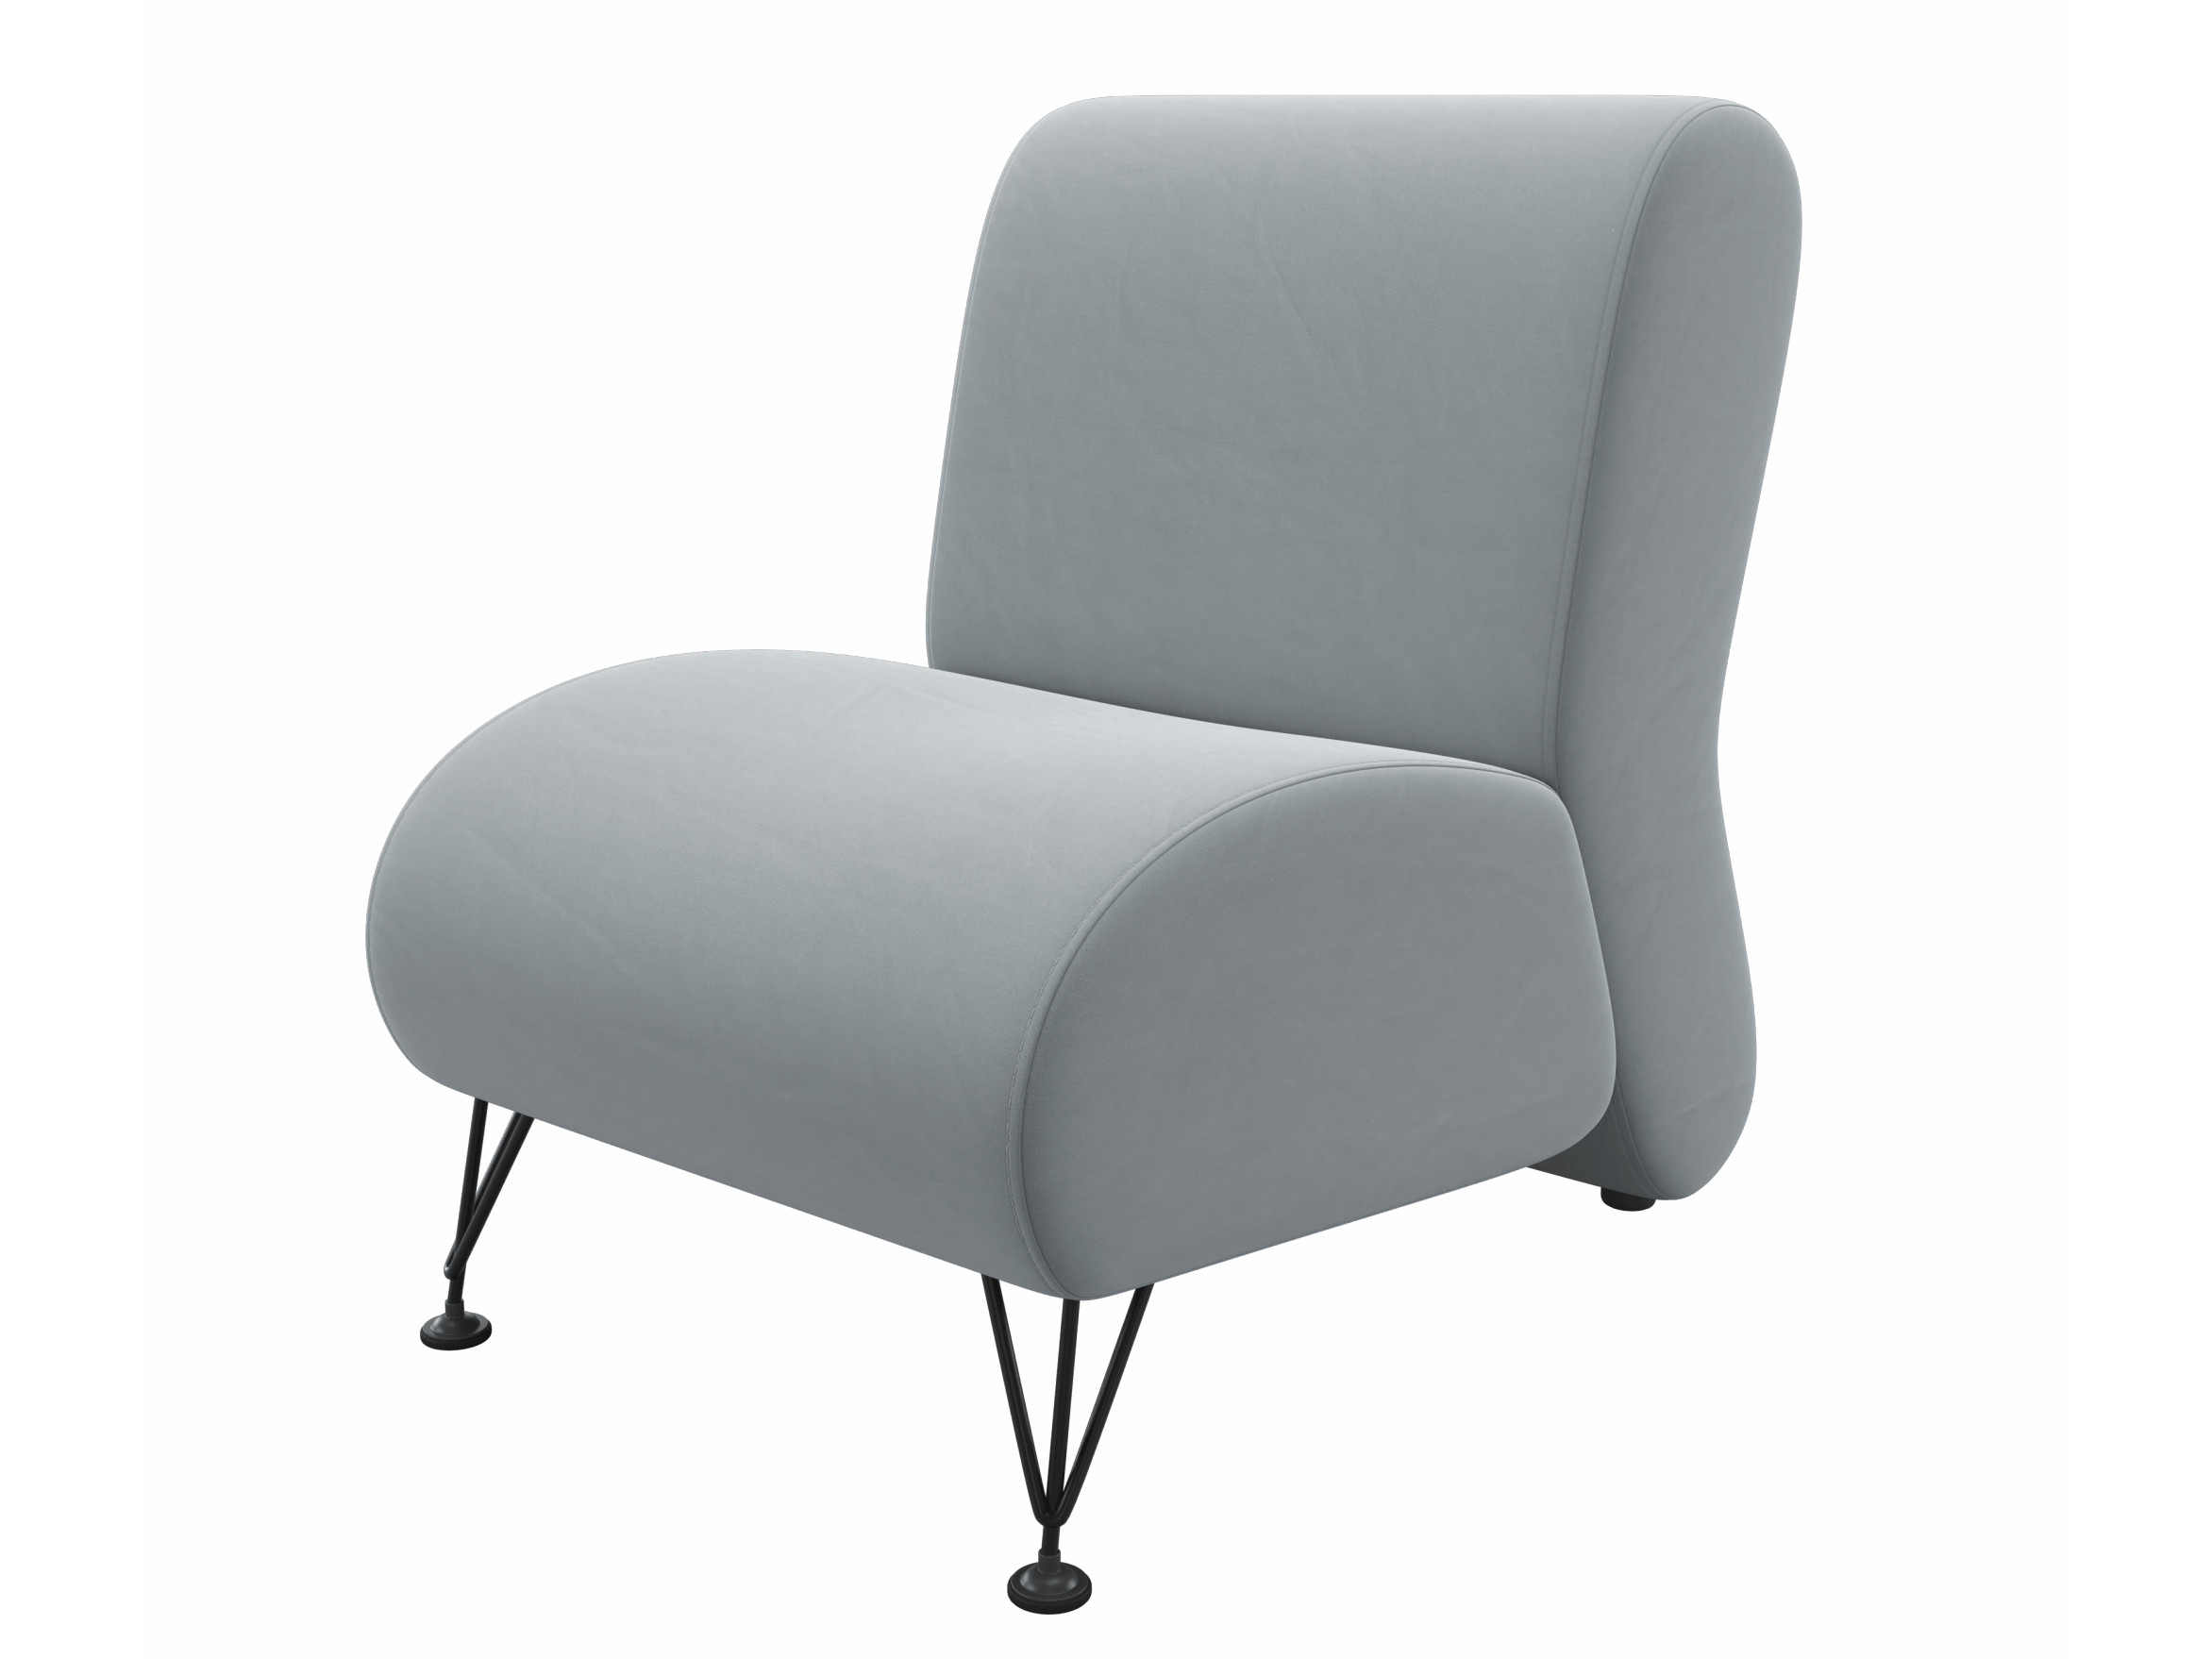 Мягкое дизайнерское кресло Pati серый MebelVia серый, Велюр цена и фото